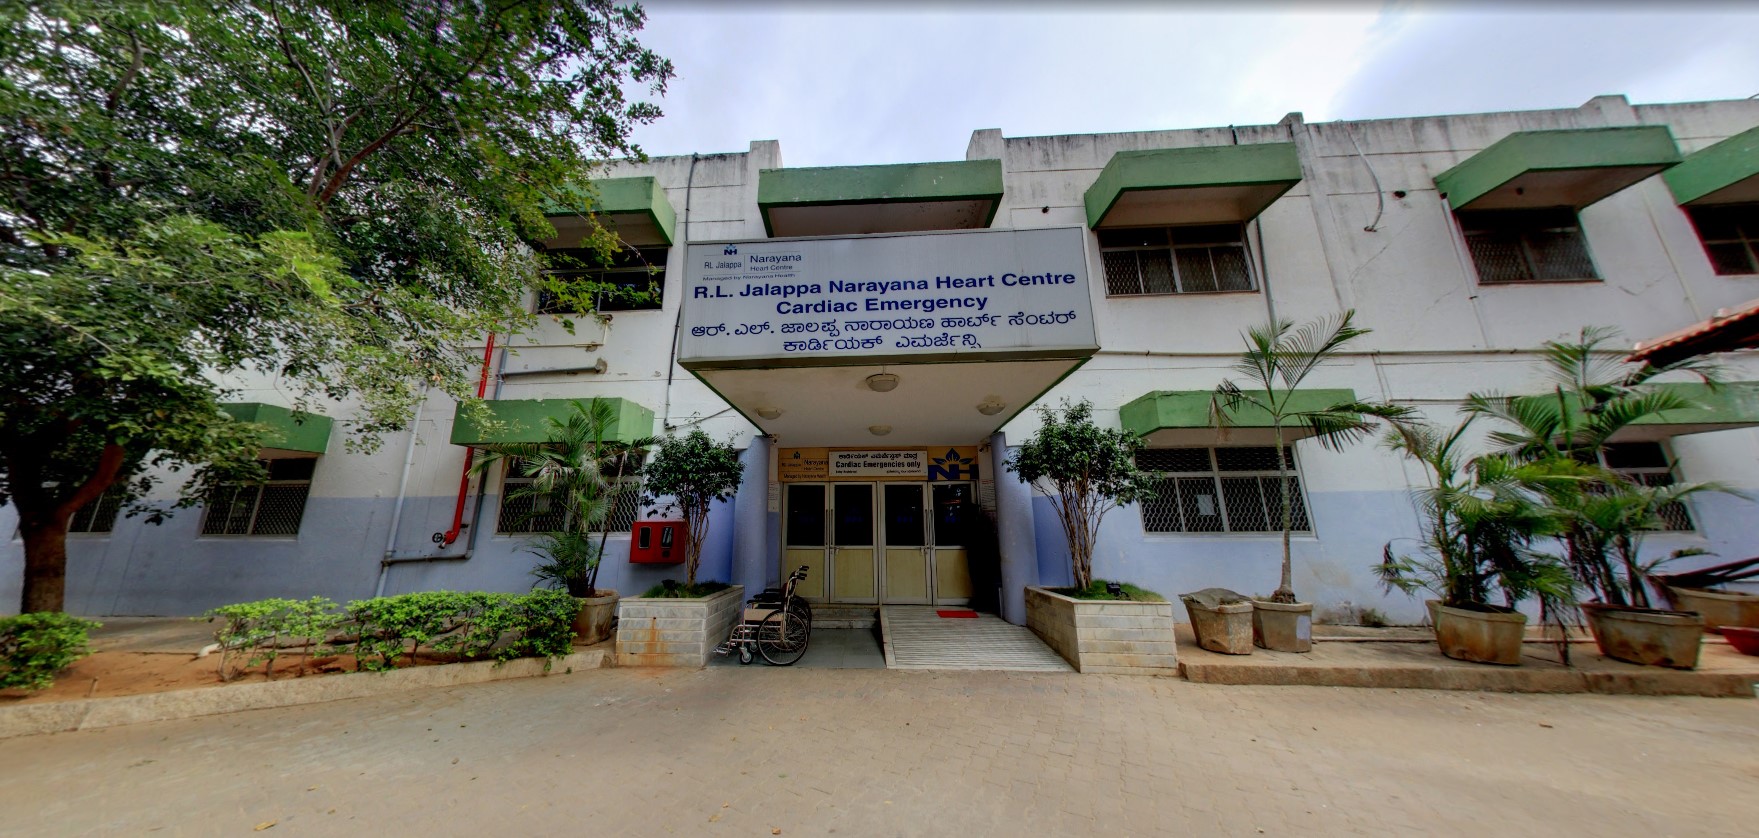 R. L. Jalappa Narayana Heart Center - Tamaka